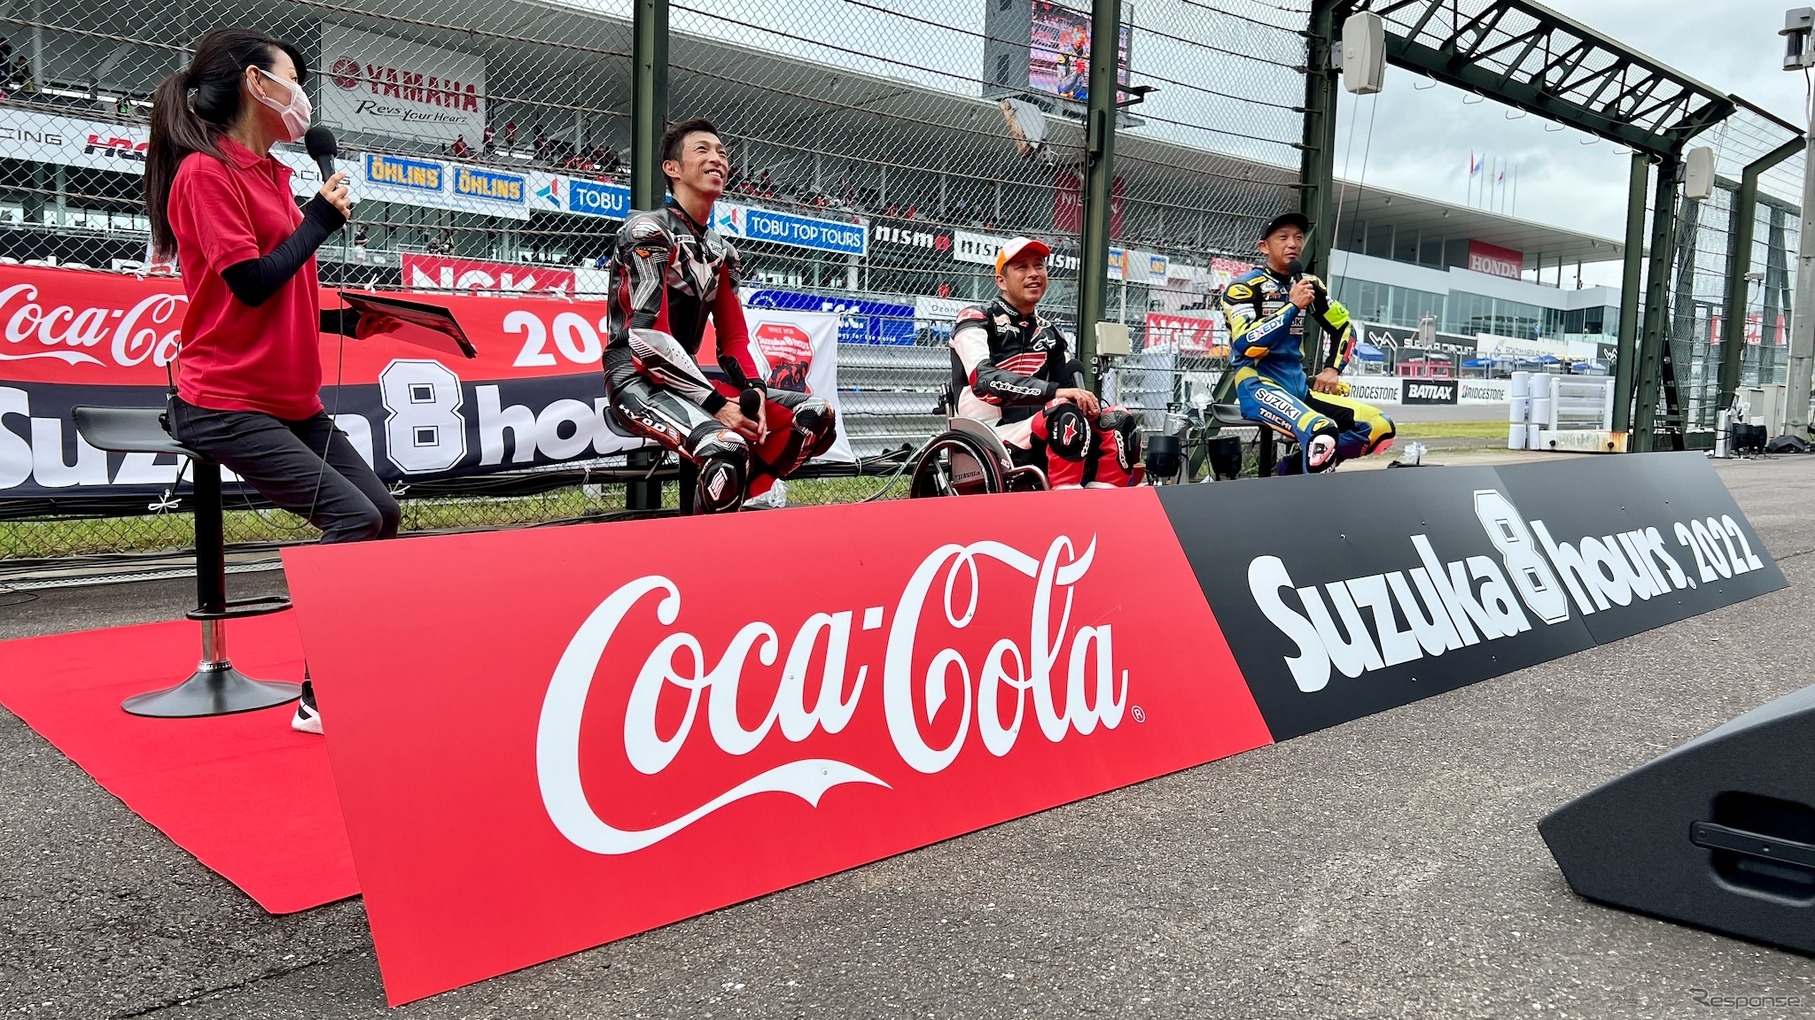 コカ・コーラ鈴鹿8時間耐久ロードレース